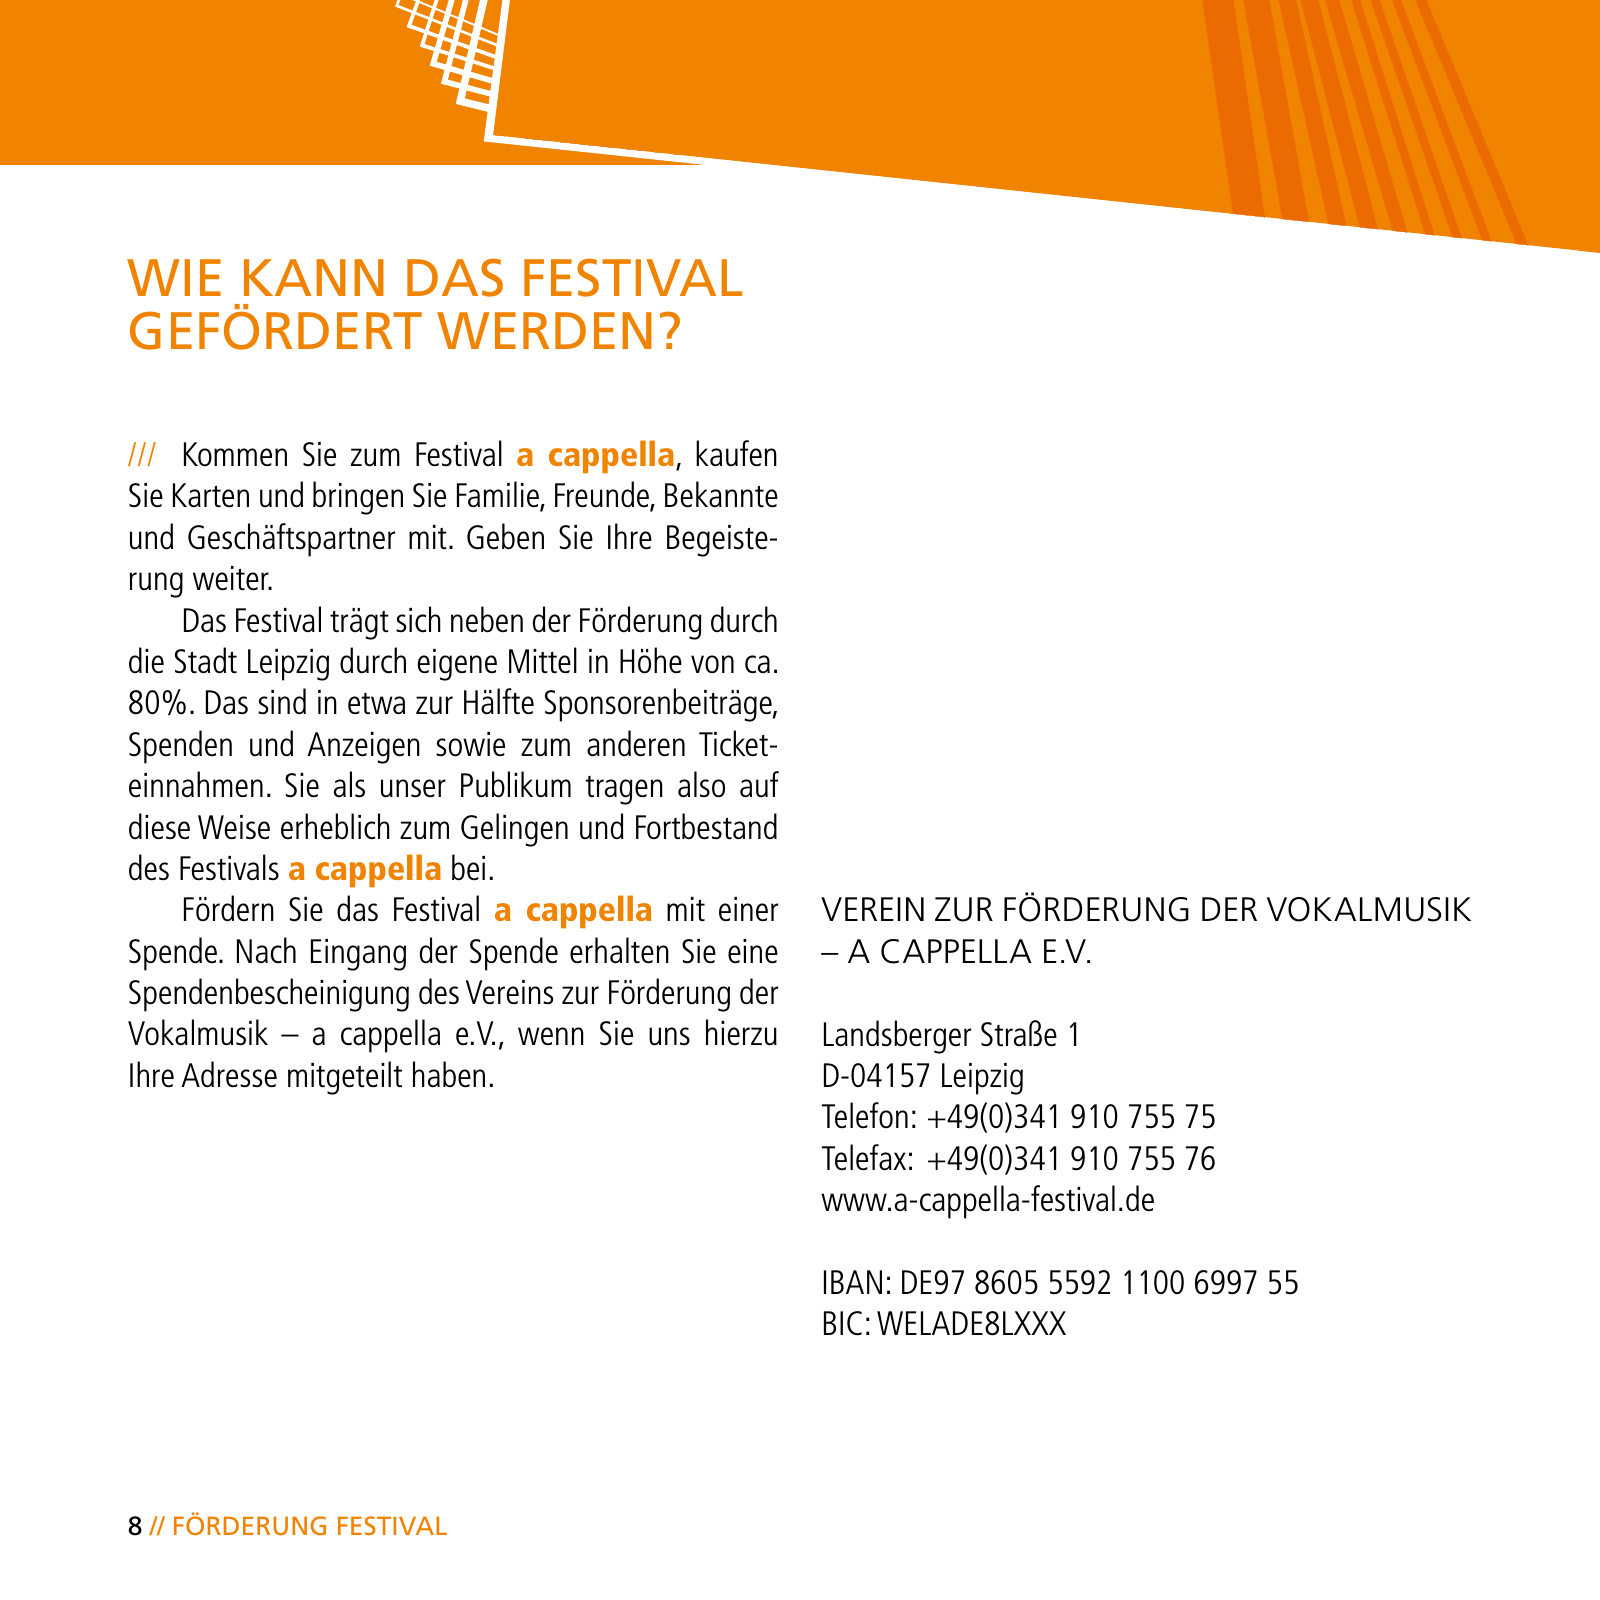 Vorschau E-Paper Festival a cappella 2015 Seite 10